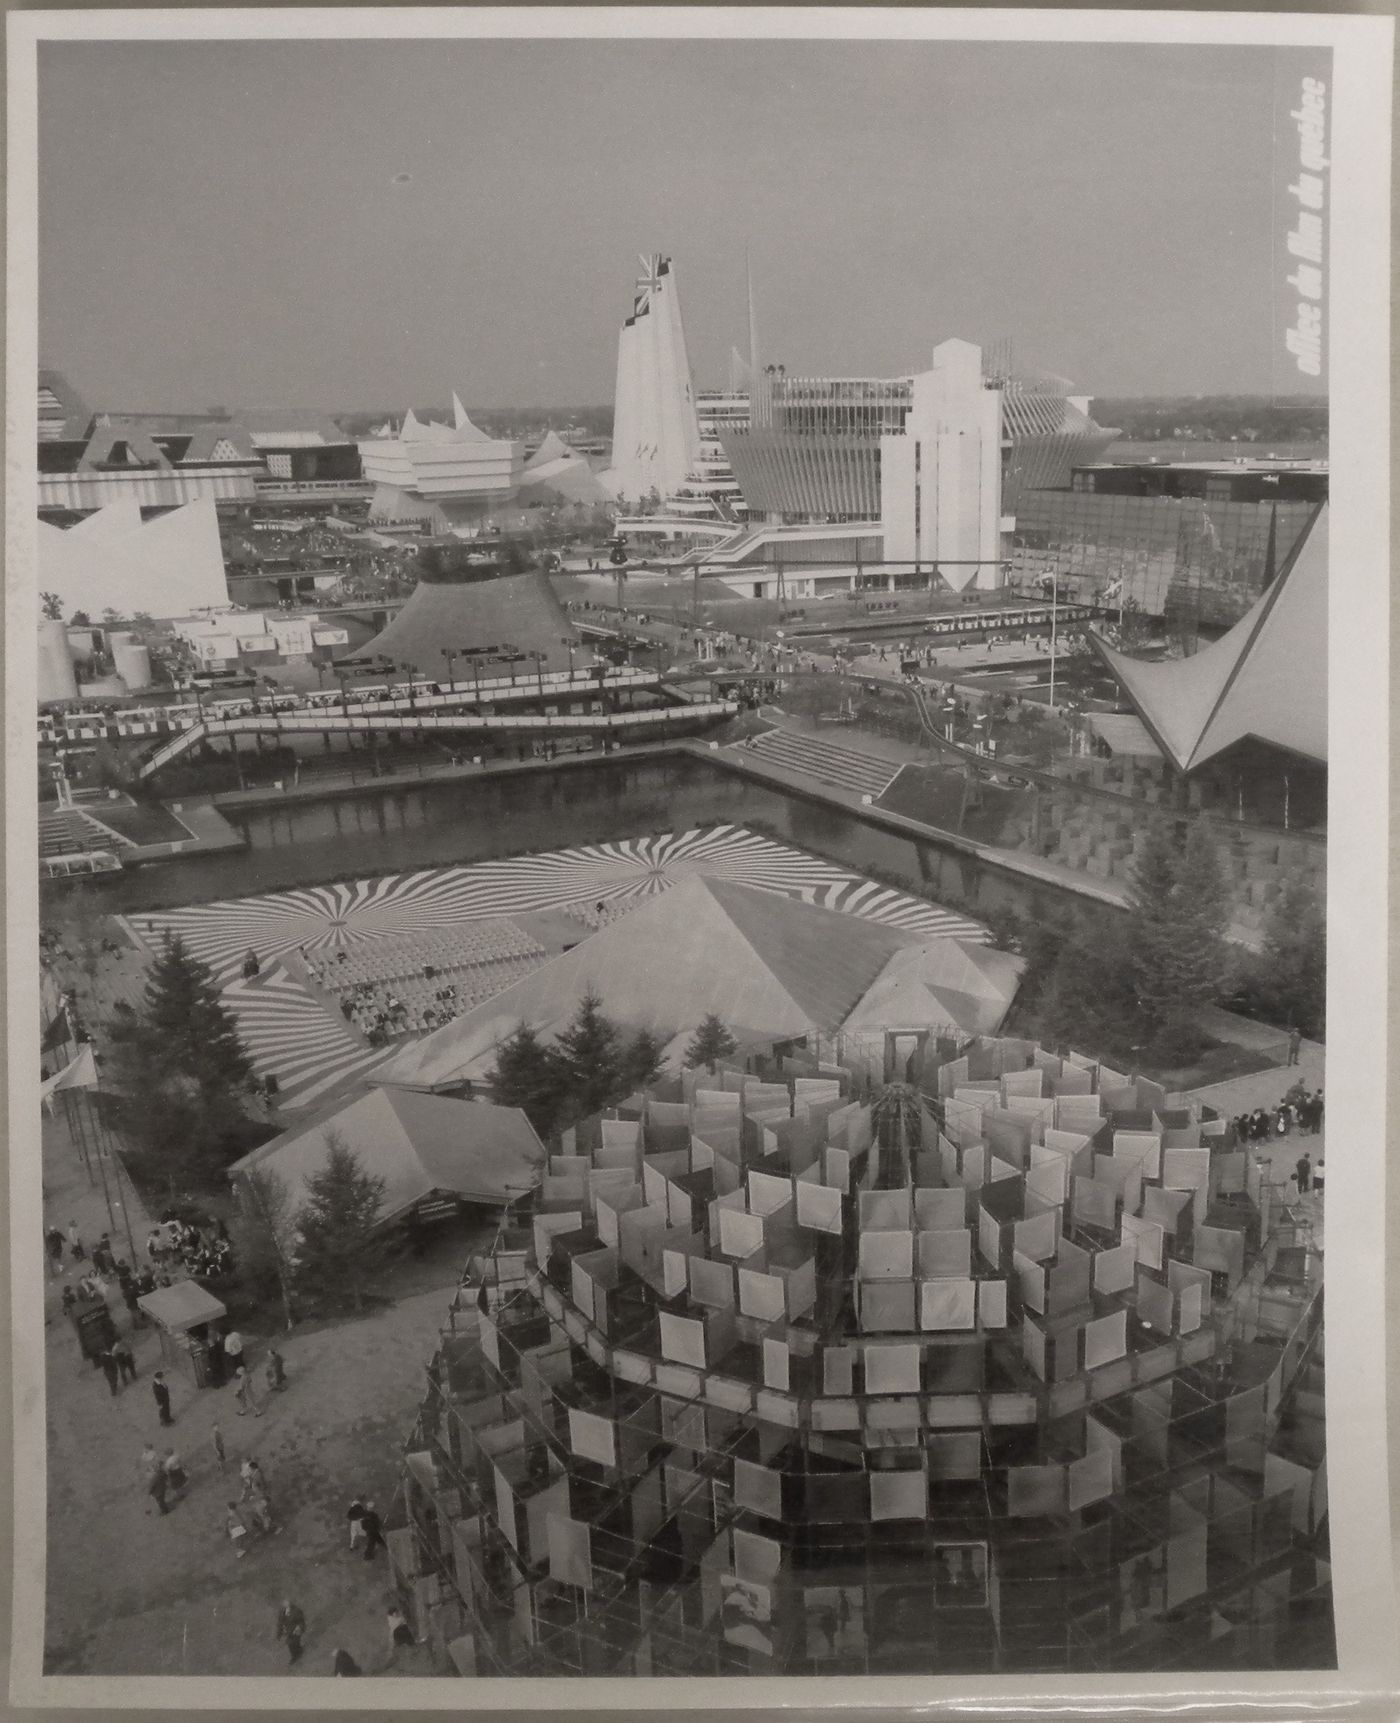 Partial view of the Île Notre-Dame site from the Canada's Pavilion, Expo 67, Montréal, Québec